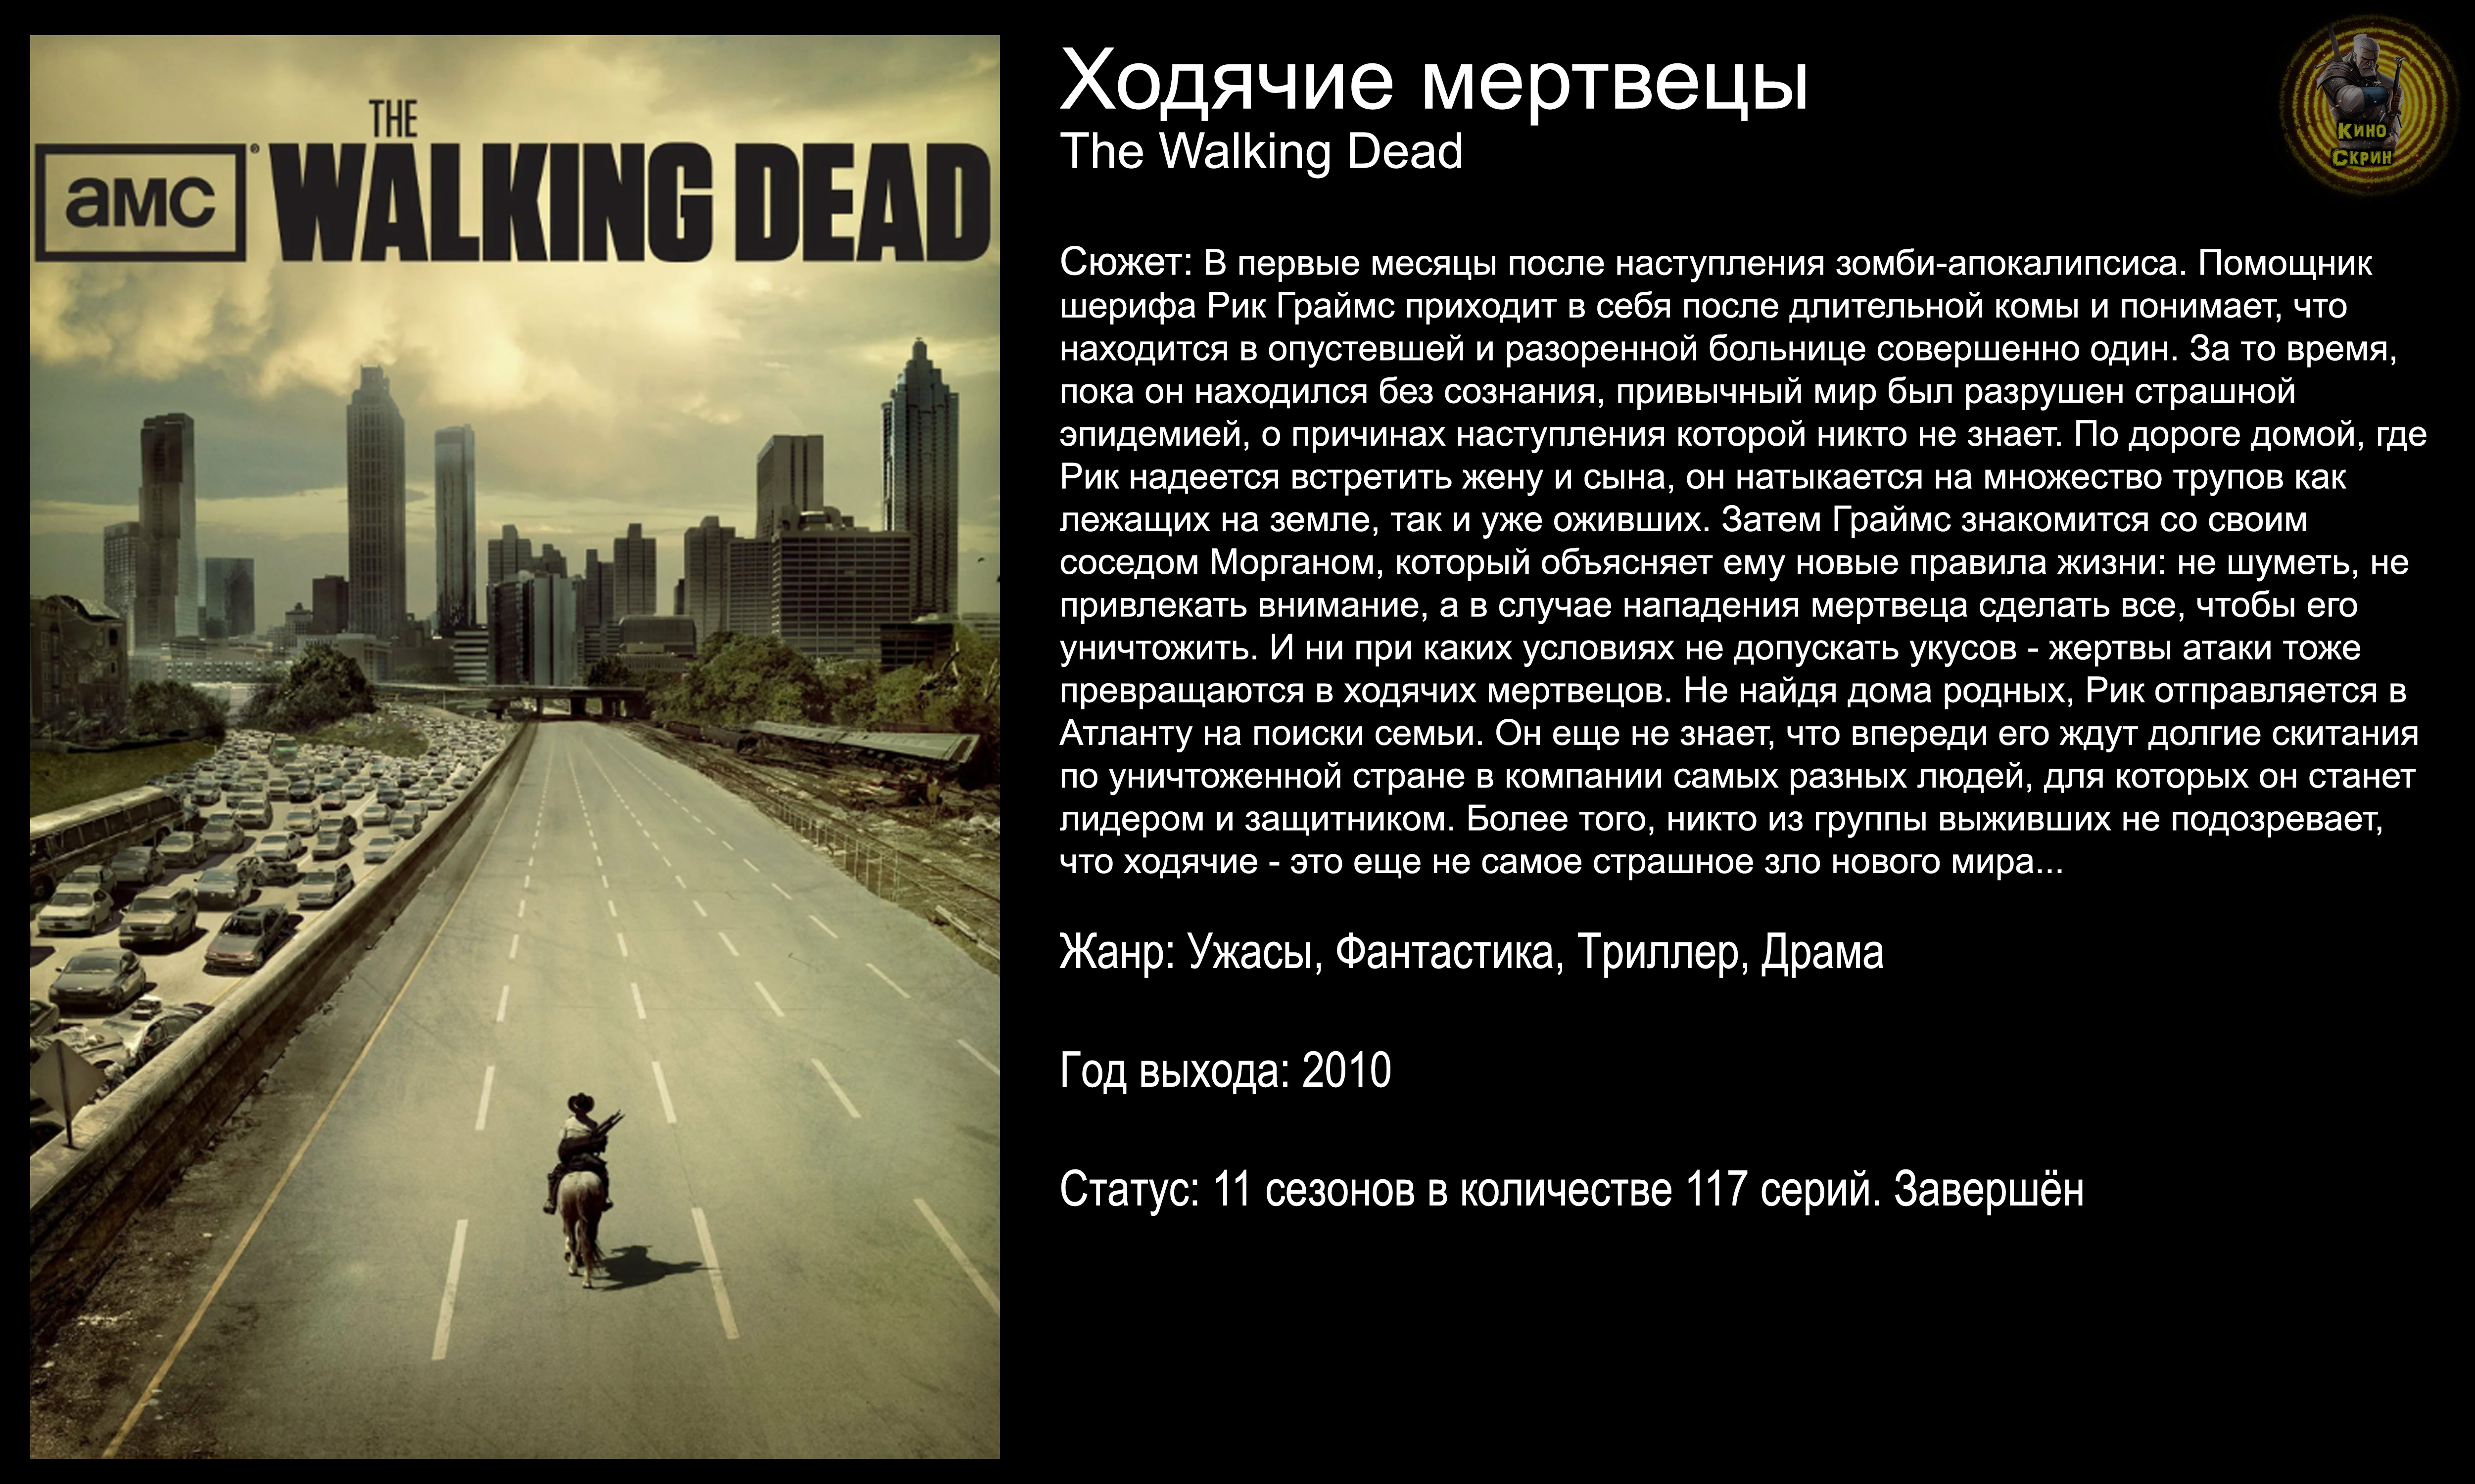 Ходячие мертвецы - русский трейлер (2010)